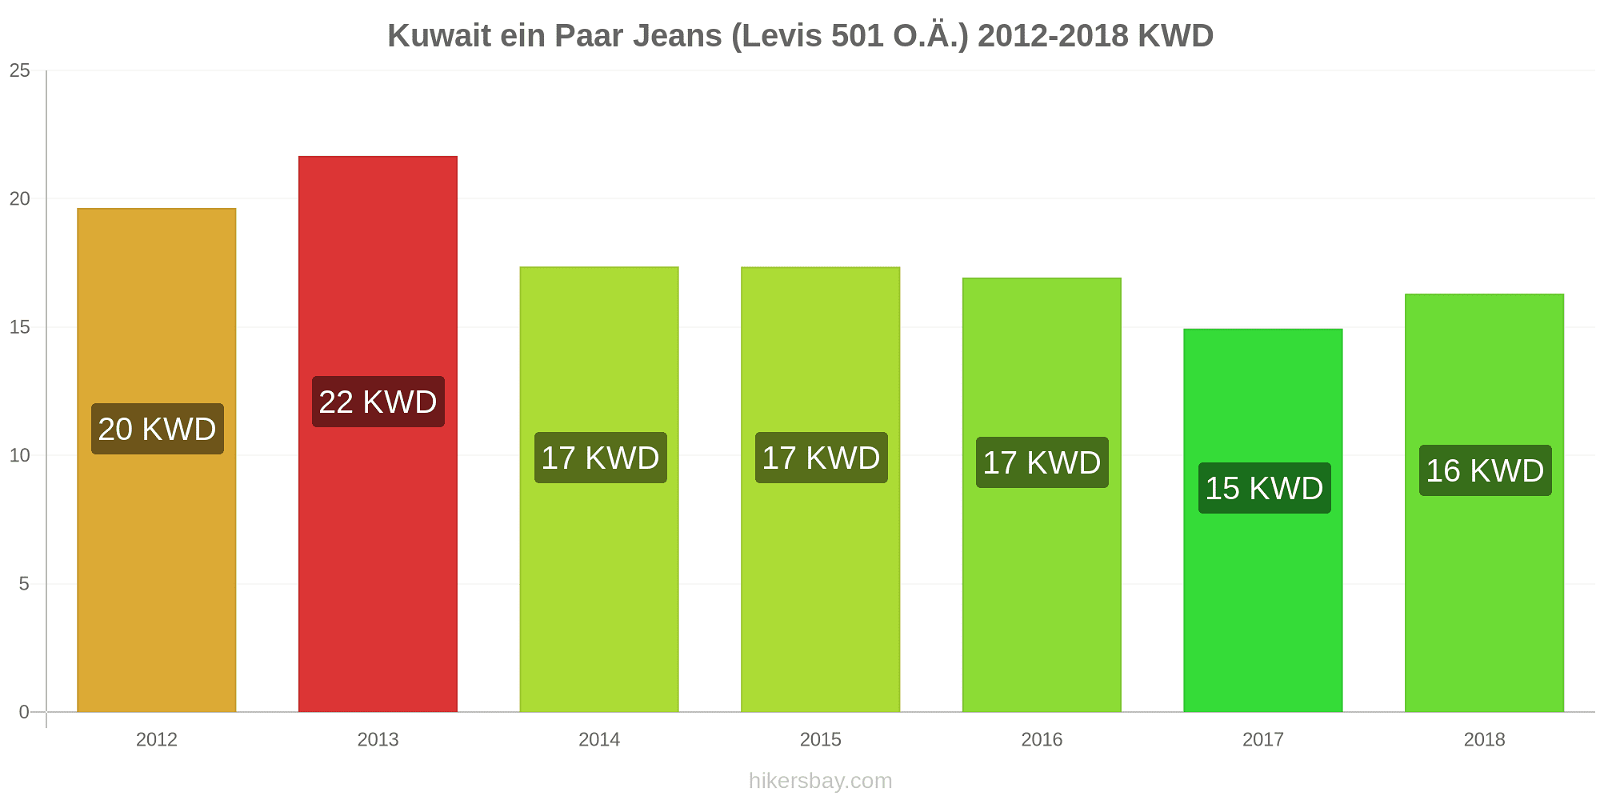 Kuwait Preisänderungen 1 Paar Jeans (Levis 501 oder ähnliche) hikersbay.com